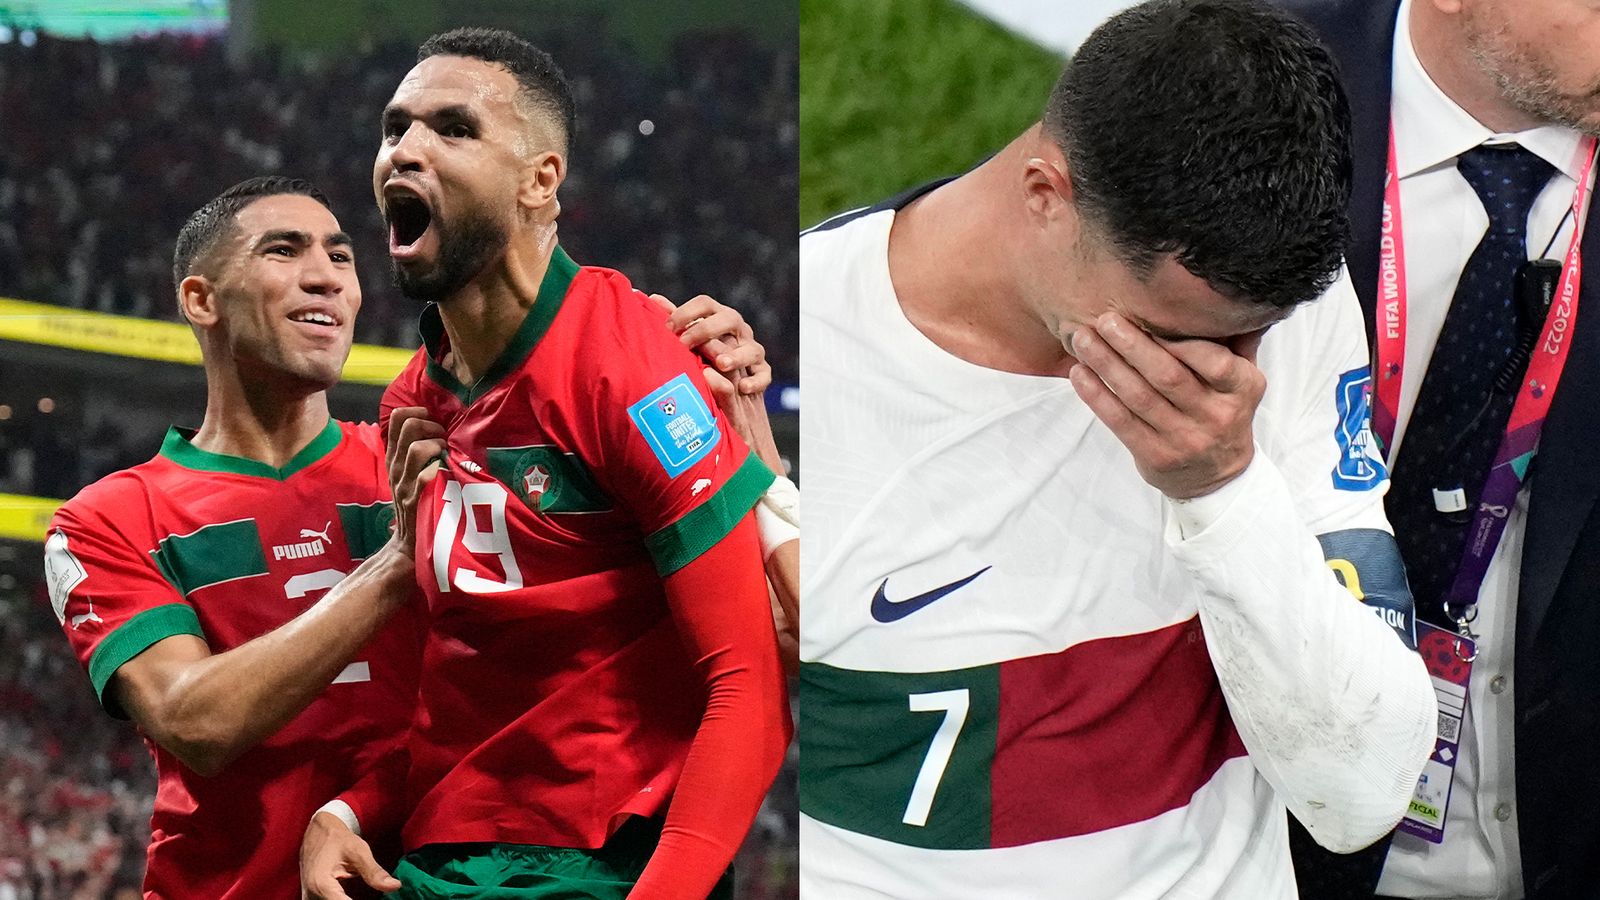 Mundial 2022 – Marrocos 1-0 Portugal: Youssef En-Nesyri marca golo e Cristiano Ronaldo deixa o torneio do Qatar |  notícias de futebol